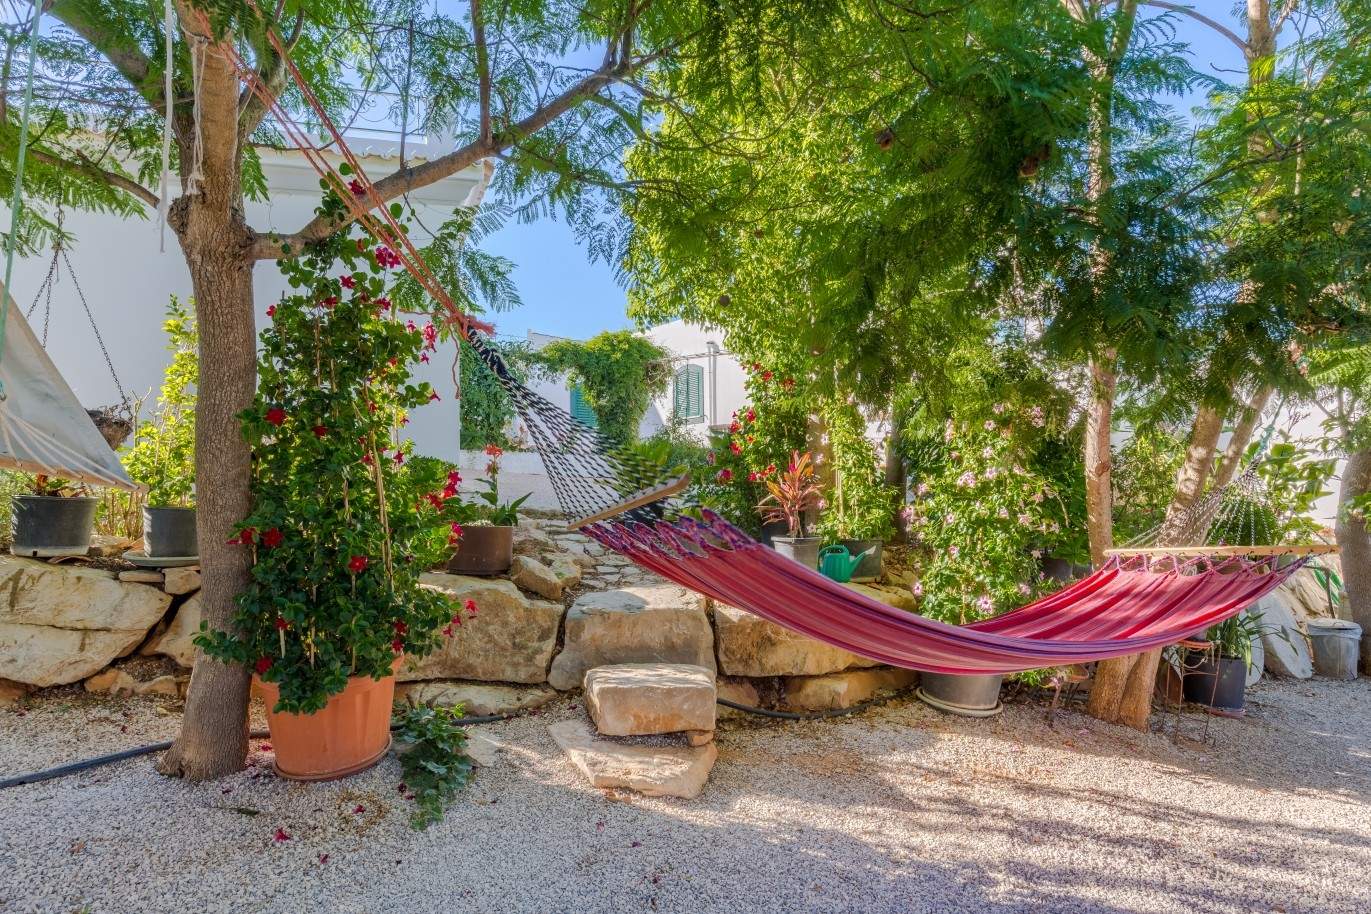 Villa individuelle à vendre, vue sur la campagne, Loulé, Algarve, Portugal_67634